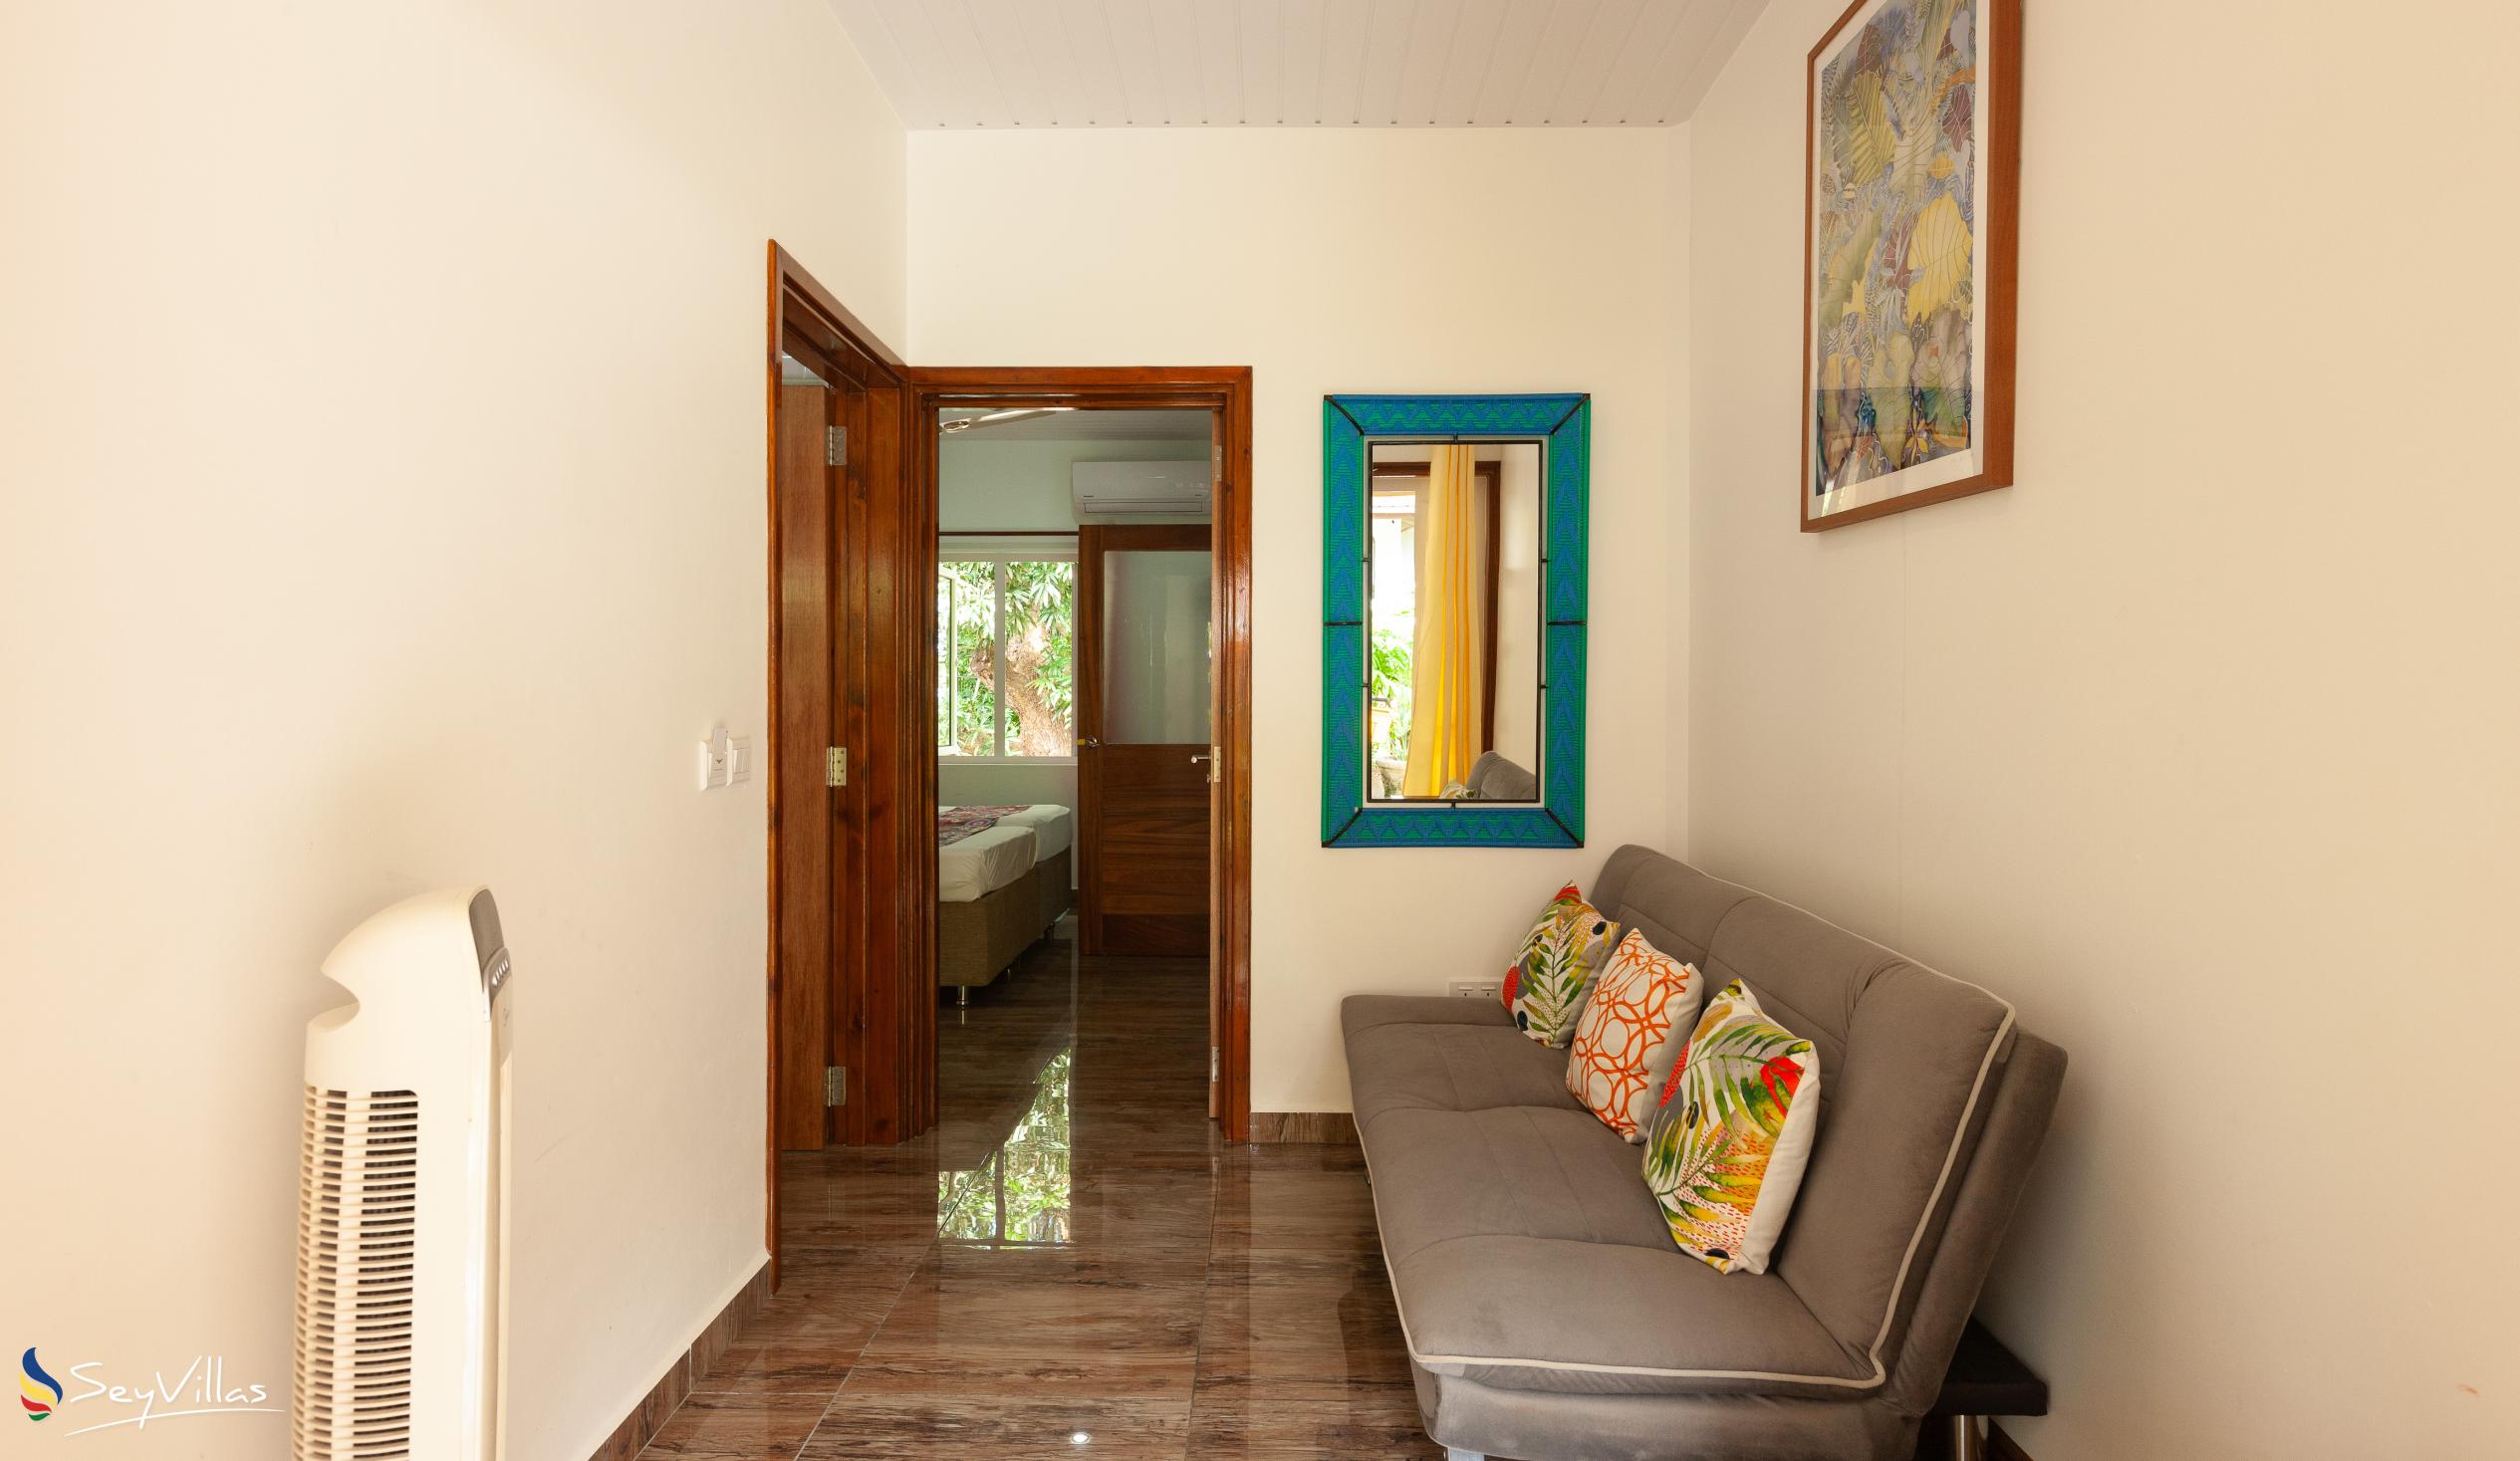 Foto 74: Chloe's Cottage - Appartamento Deluxe con vista giardino - La Digue (Seychelles)